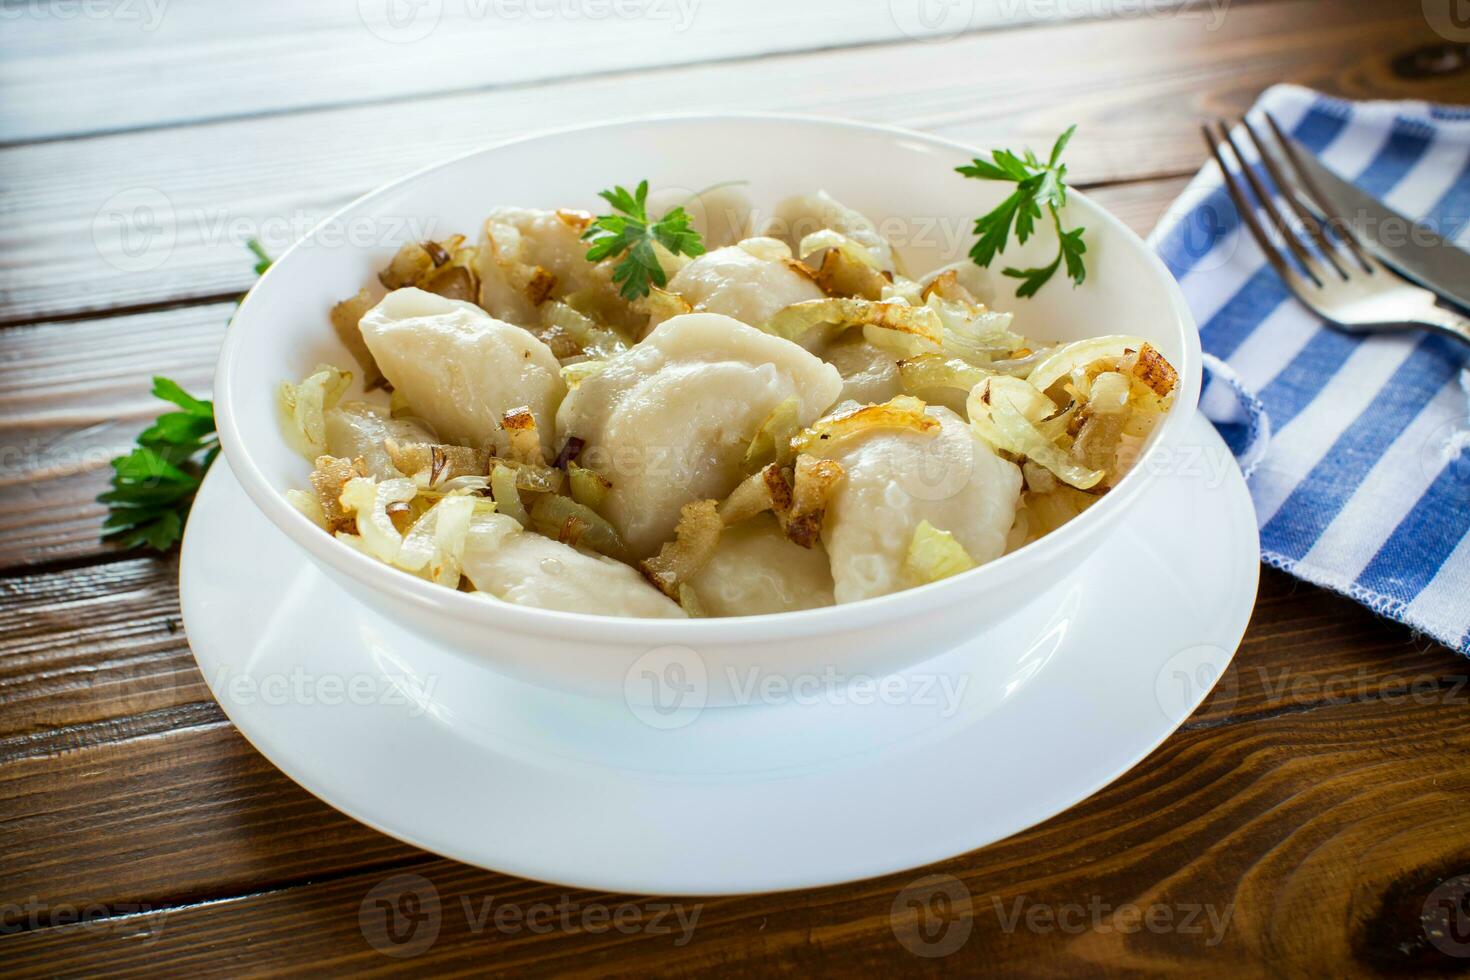 Ukrainian Vareniky or Pierogi stuffed with potato and mushrooms, served with fried onion. photo